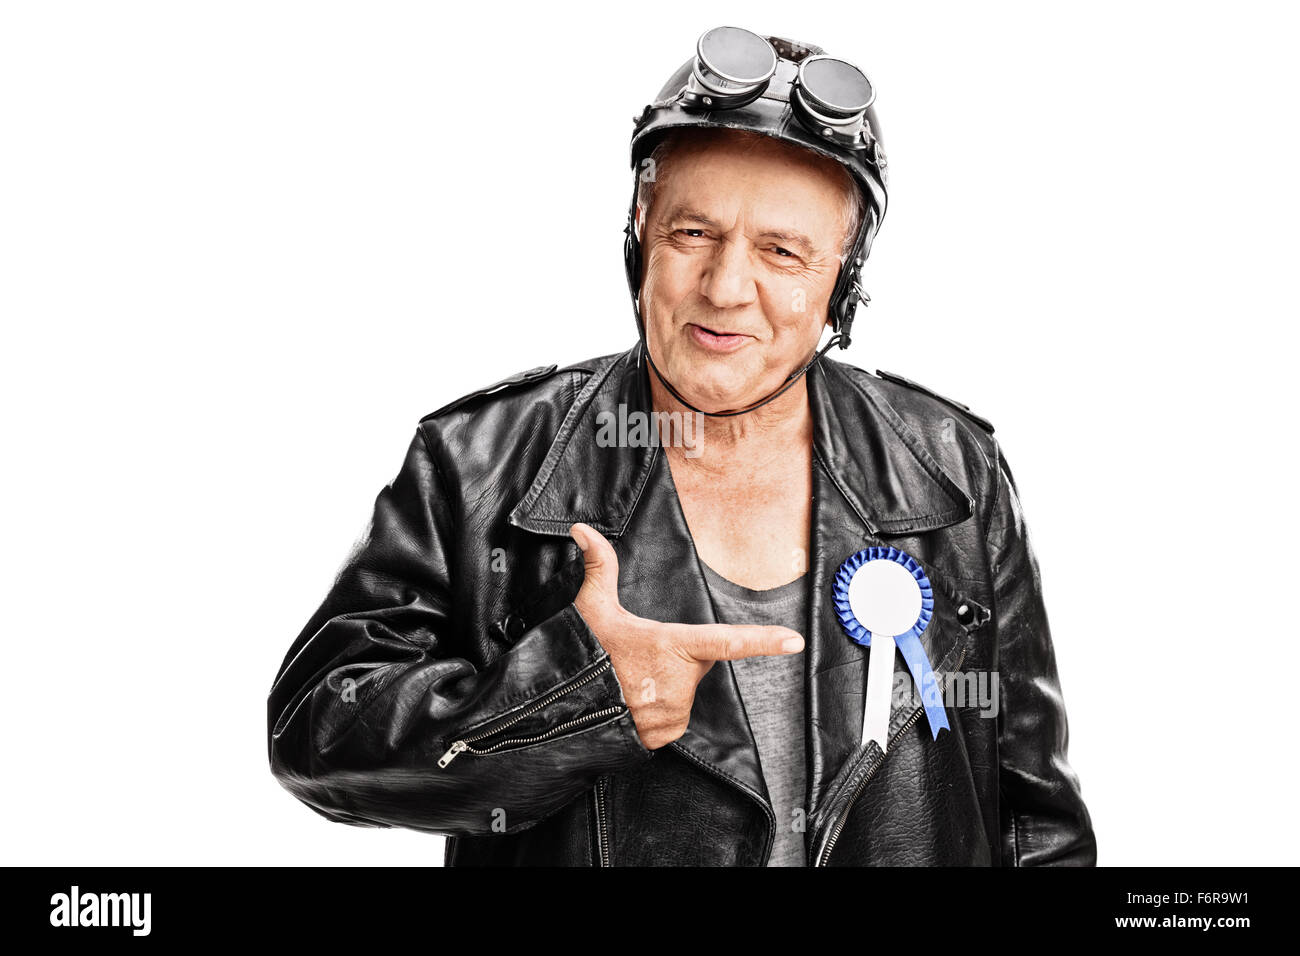 Joyful senior biker pointing towards a blue award ribbon on his black leather jacket isolated on white background Stock Photo